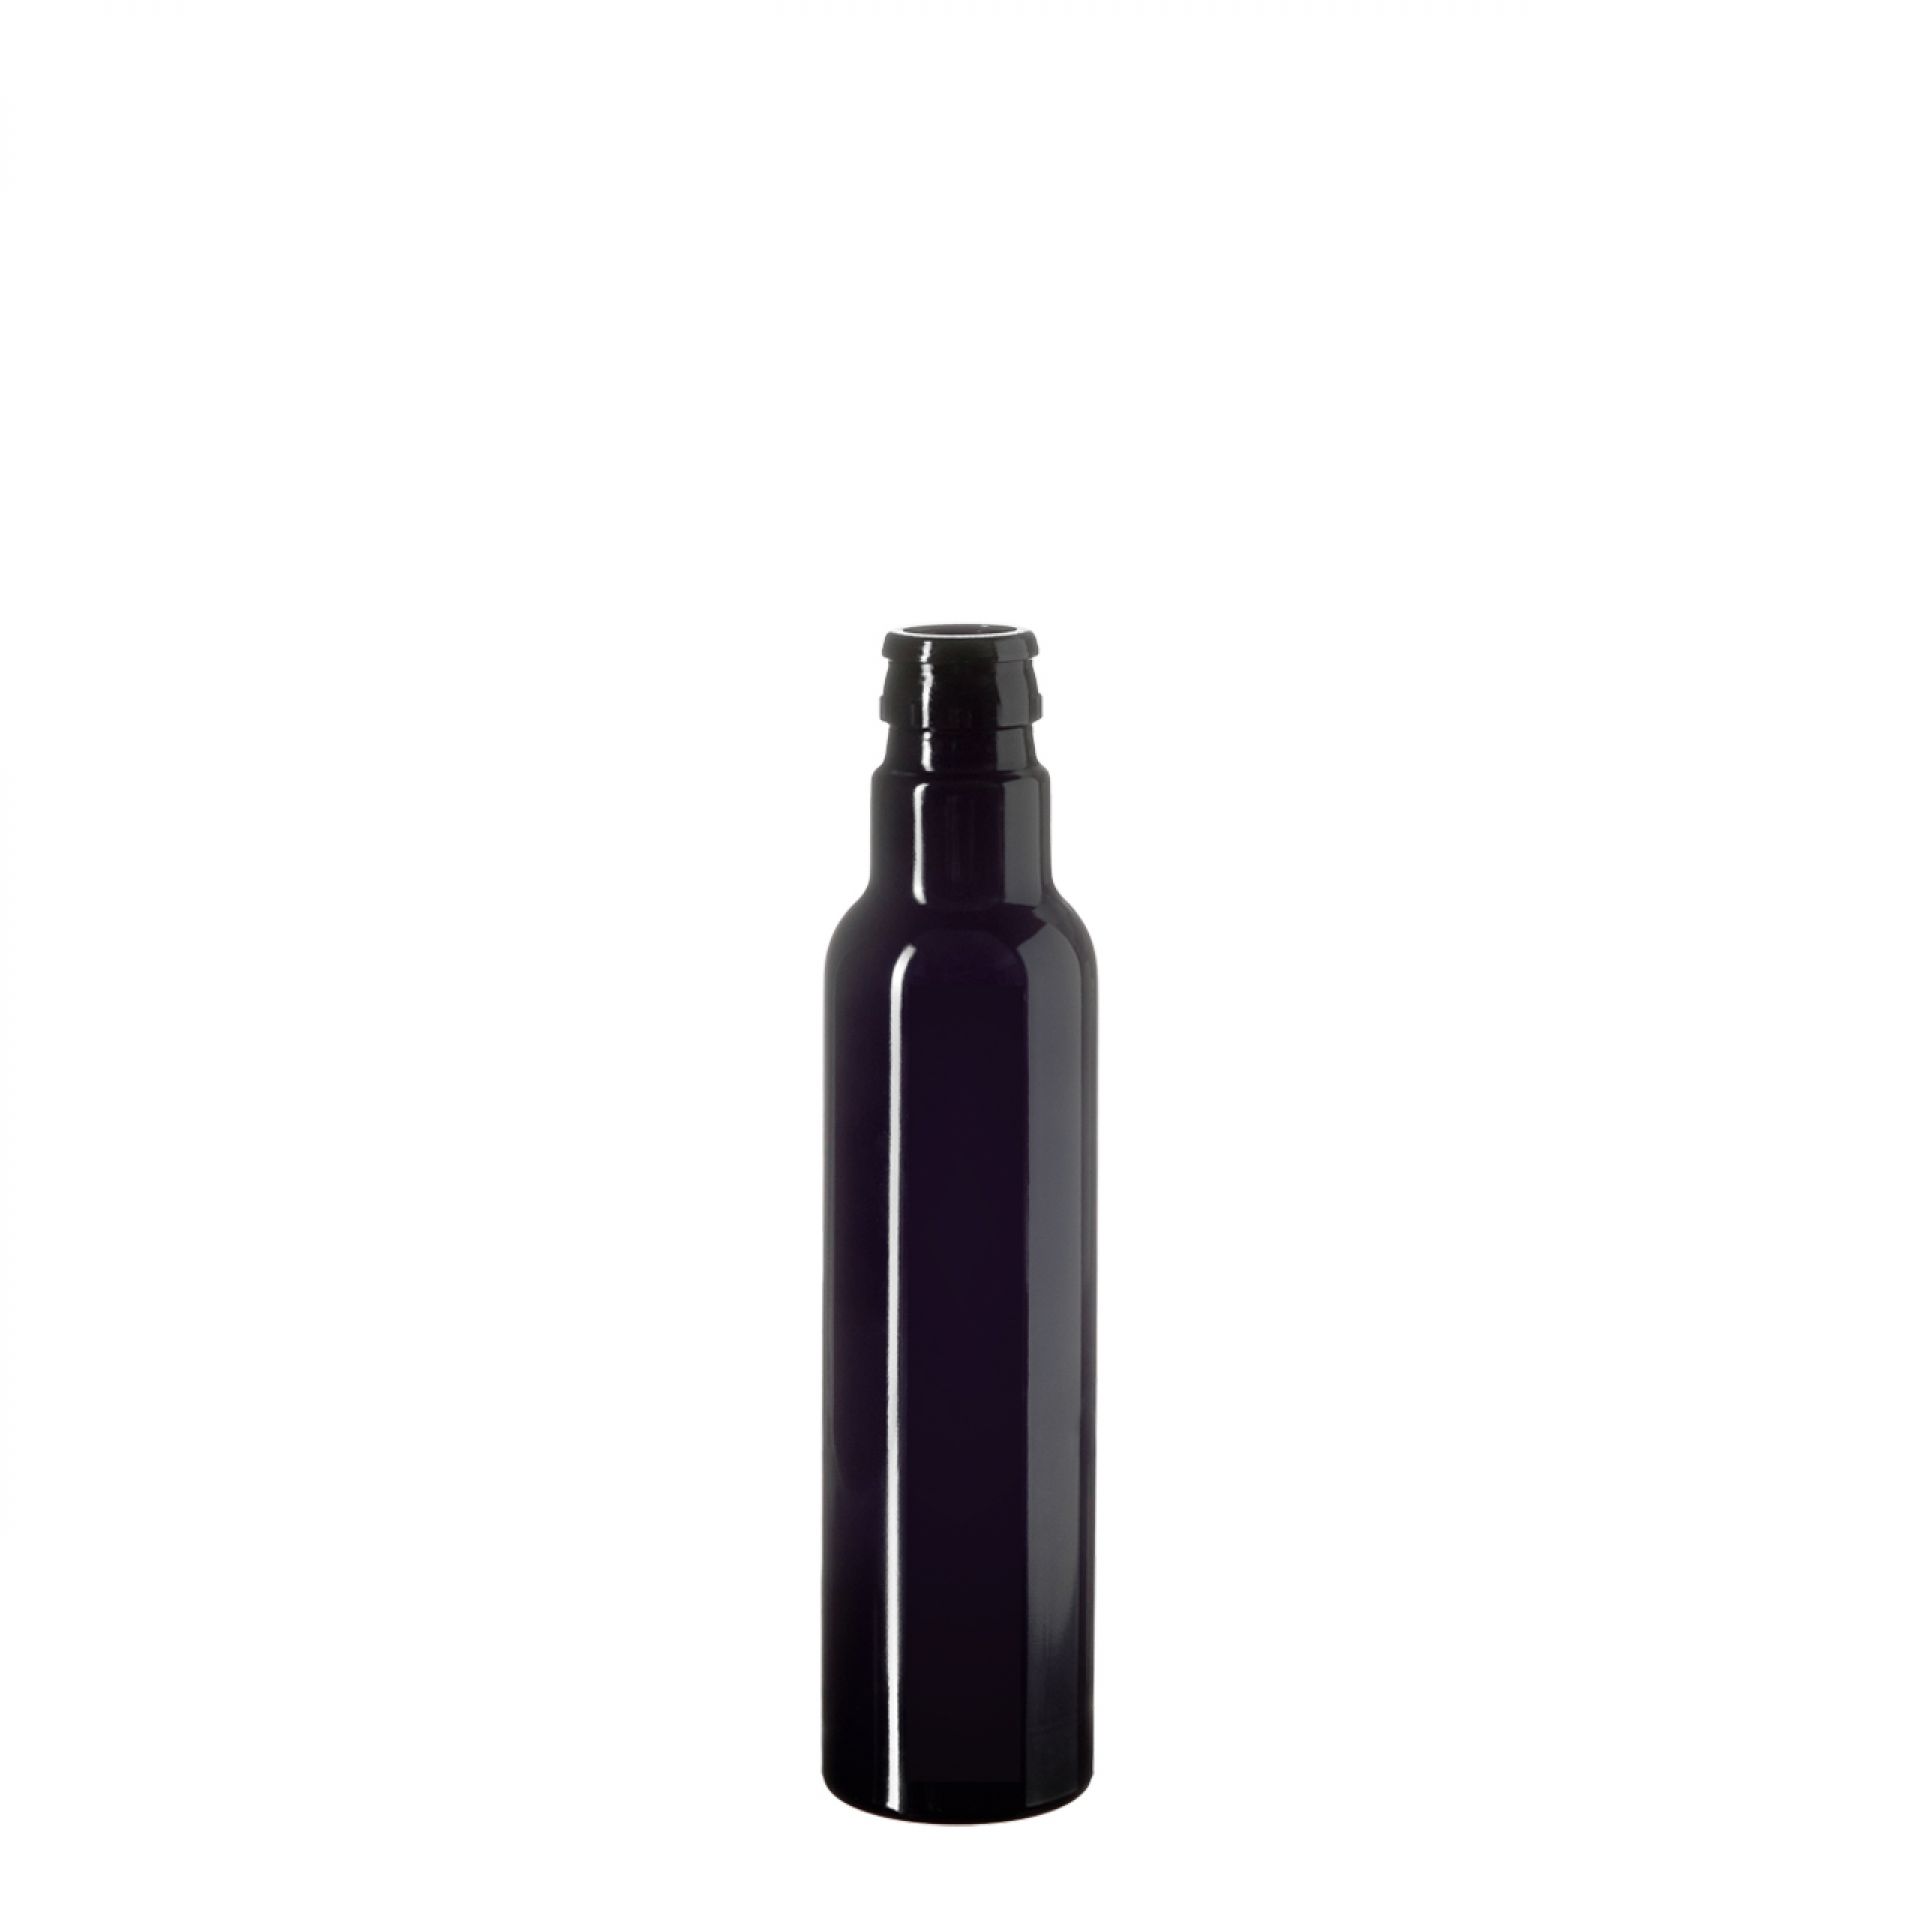 Oil bottle Pollux 250ml, CPR h47, round, Miron